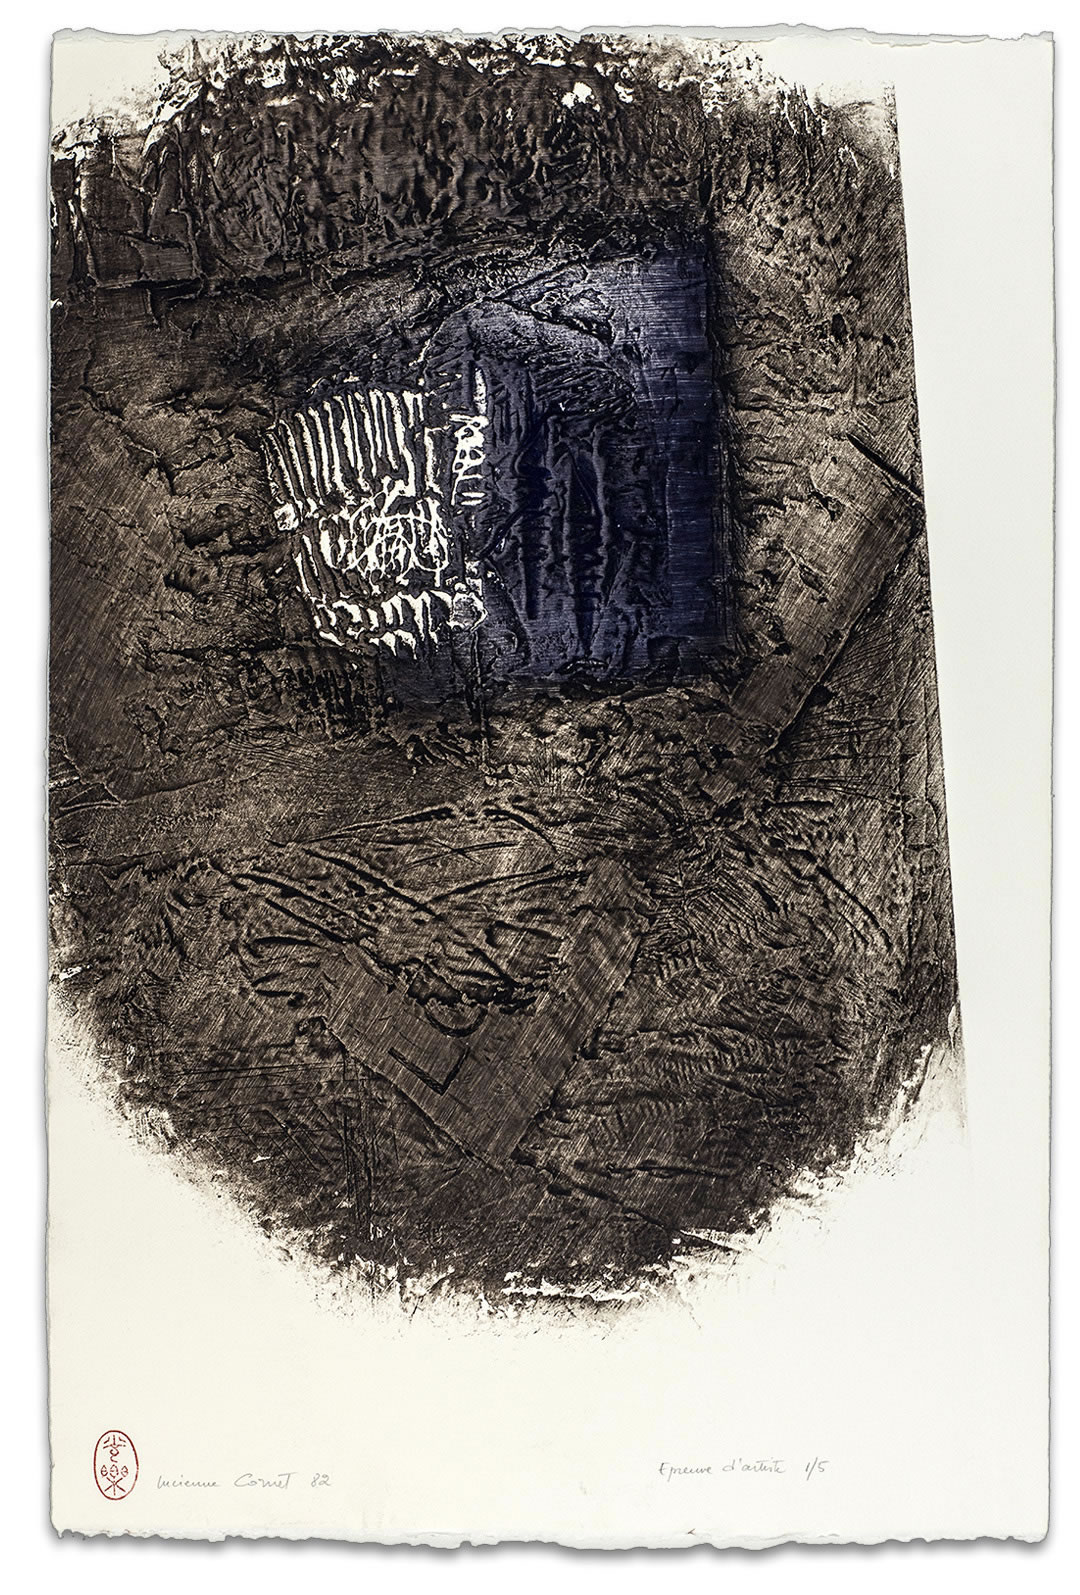 Estampe de Lucienne Cornet / Collagraphie / 66 x 50 cm